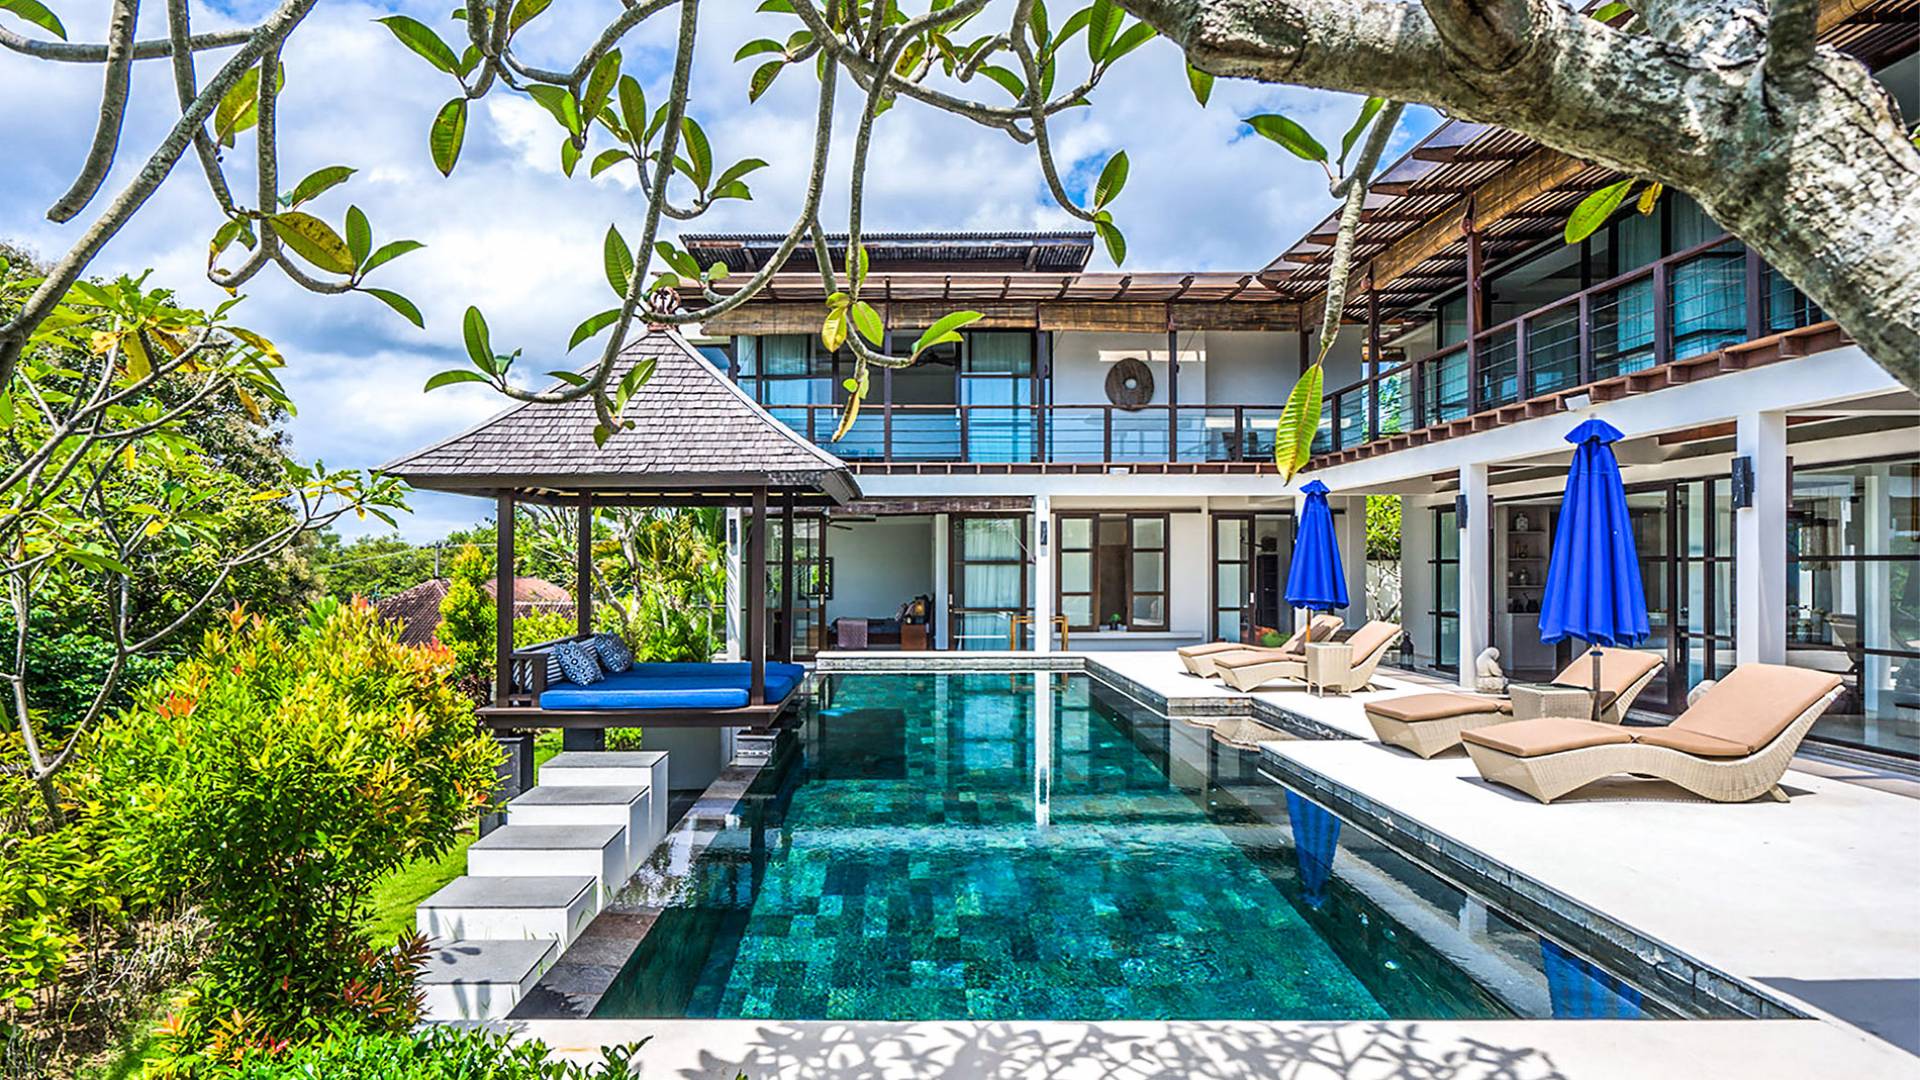  Villa  Adenium Bali  By UniqueVillas